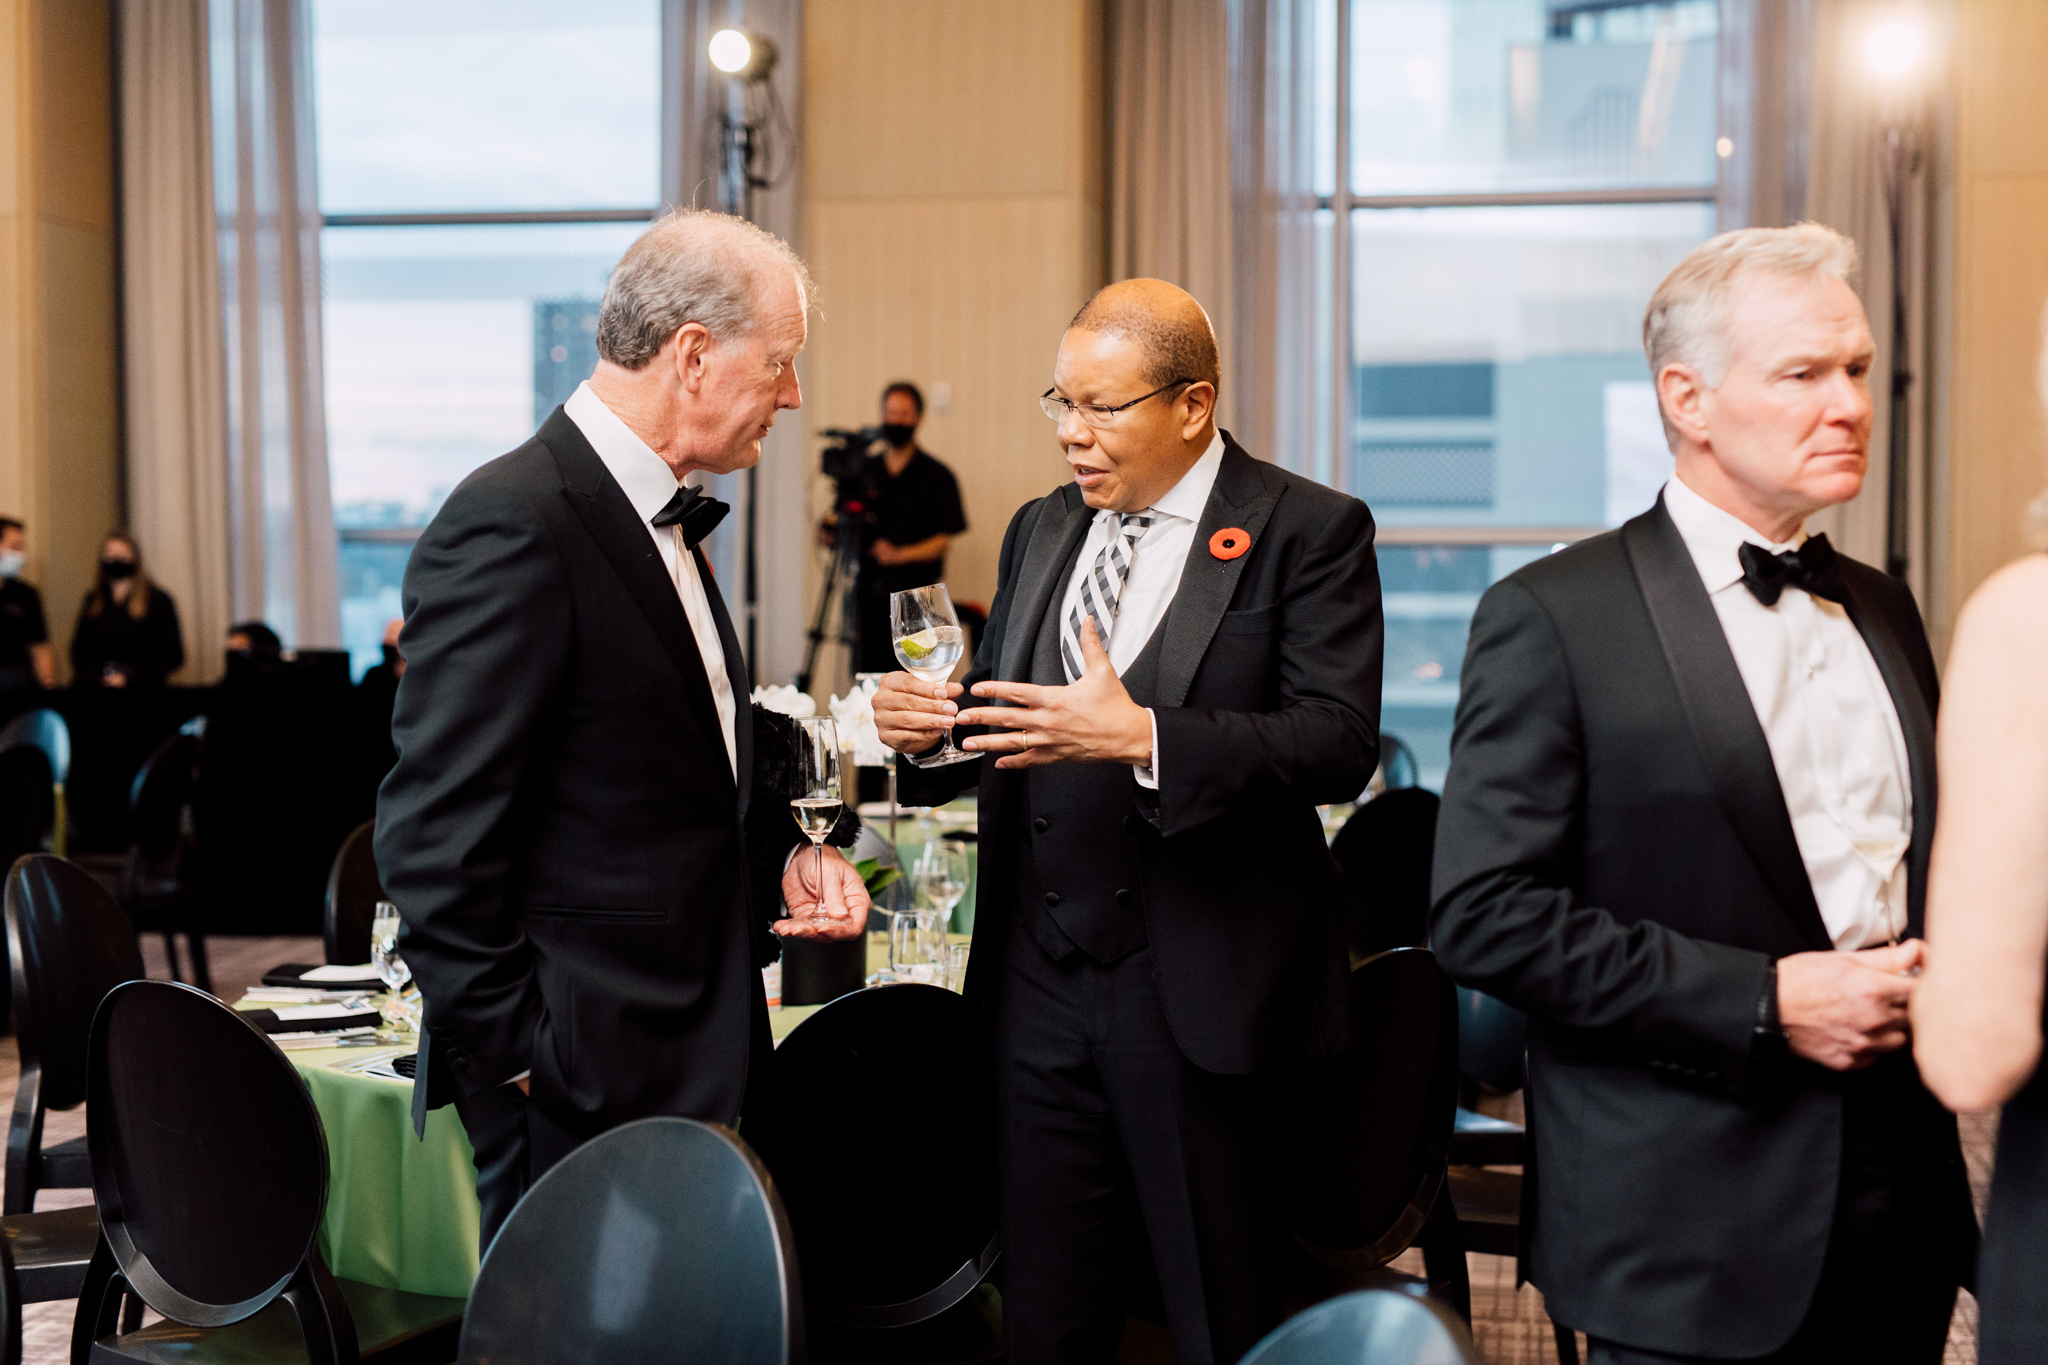 Three men in formal attire conversing at a gathering.